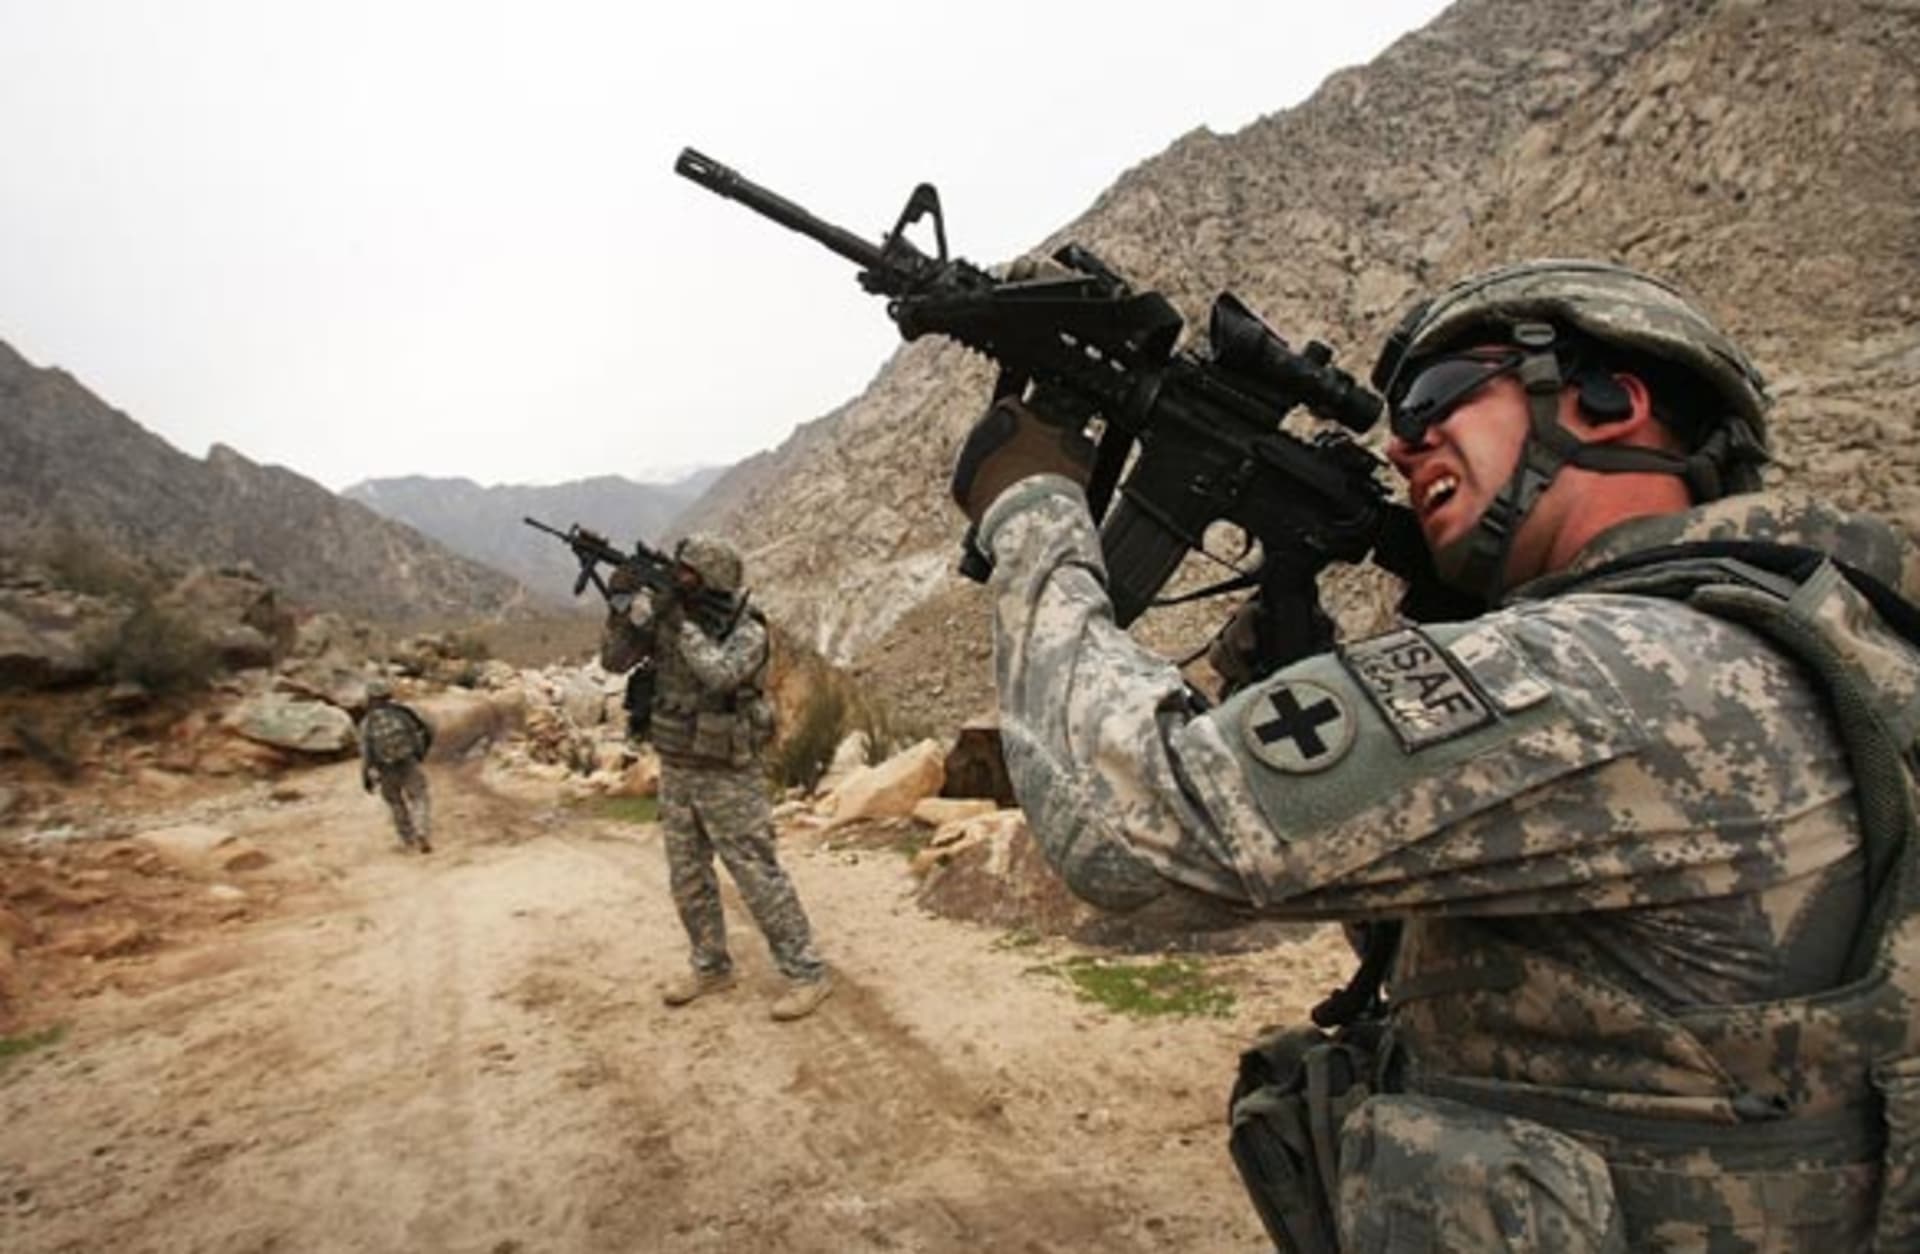 Vojáci bojující v Afghánistánu